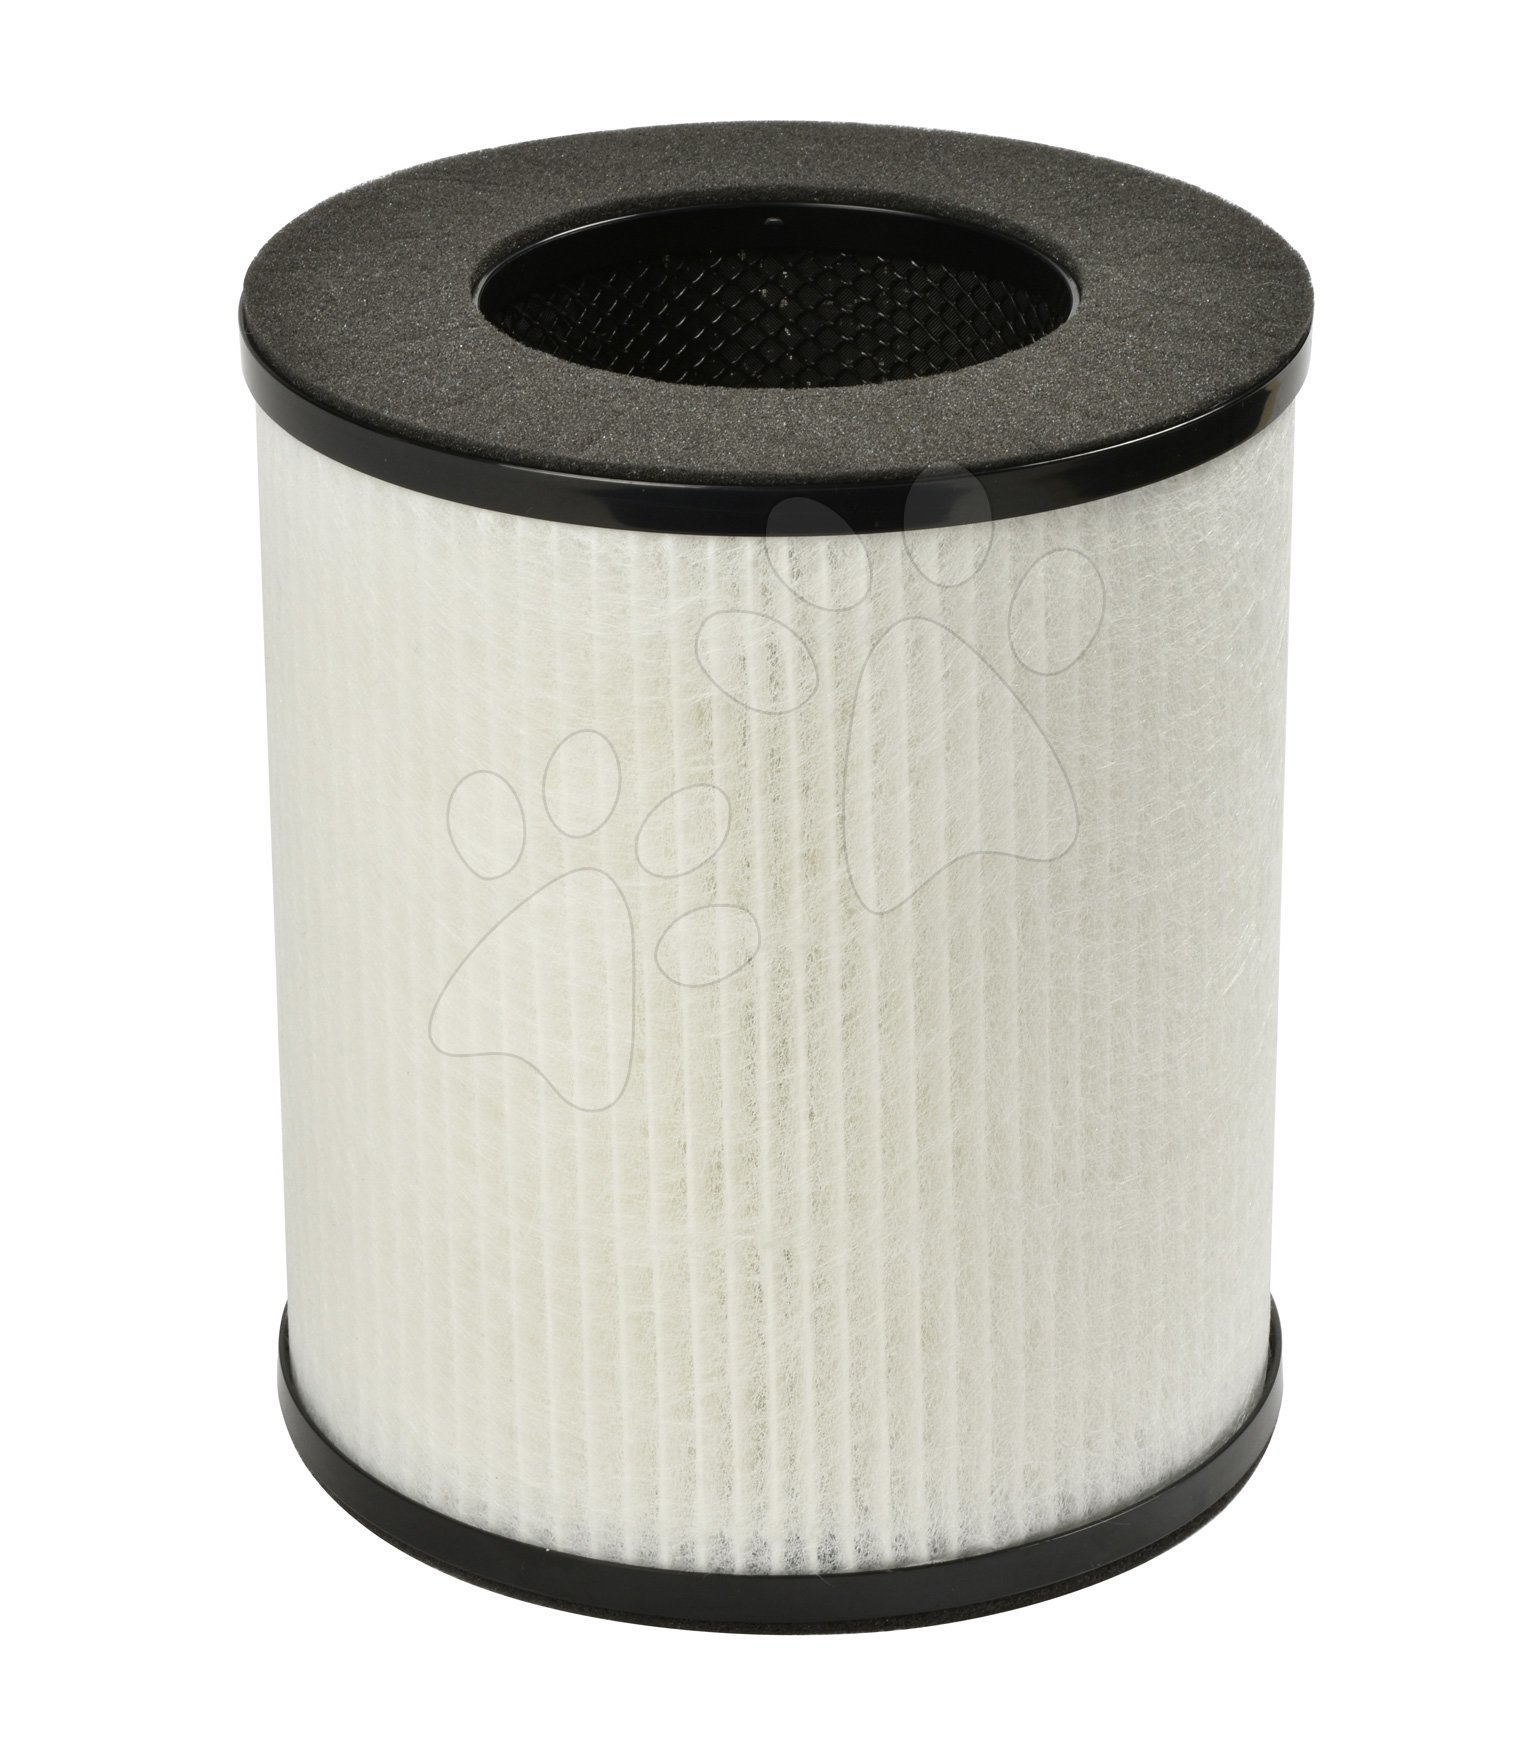 Filtr do čističky vzduchu Air Purifier Beaba náhradní 3vrstvý filtr s 99,9% účinností od 0 měs